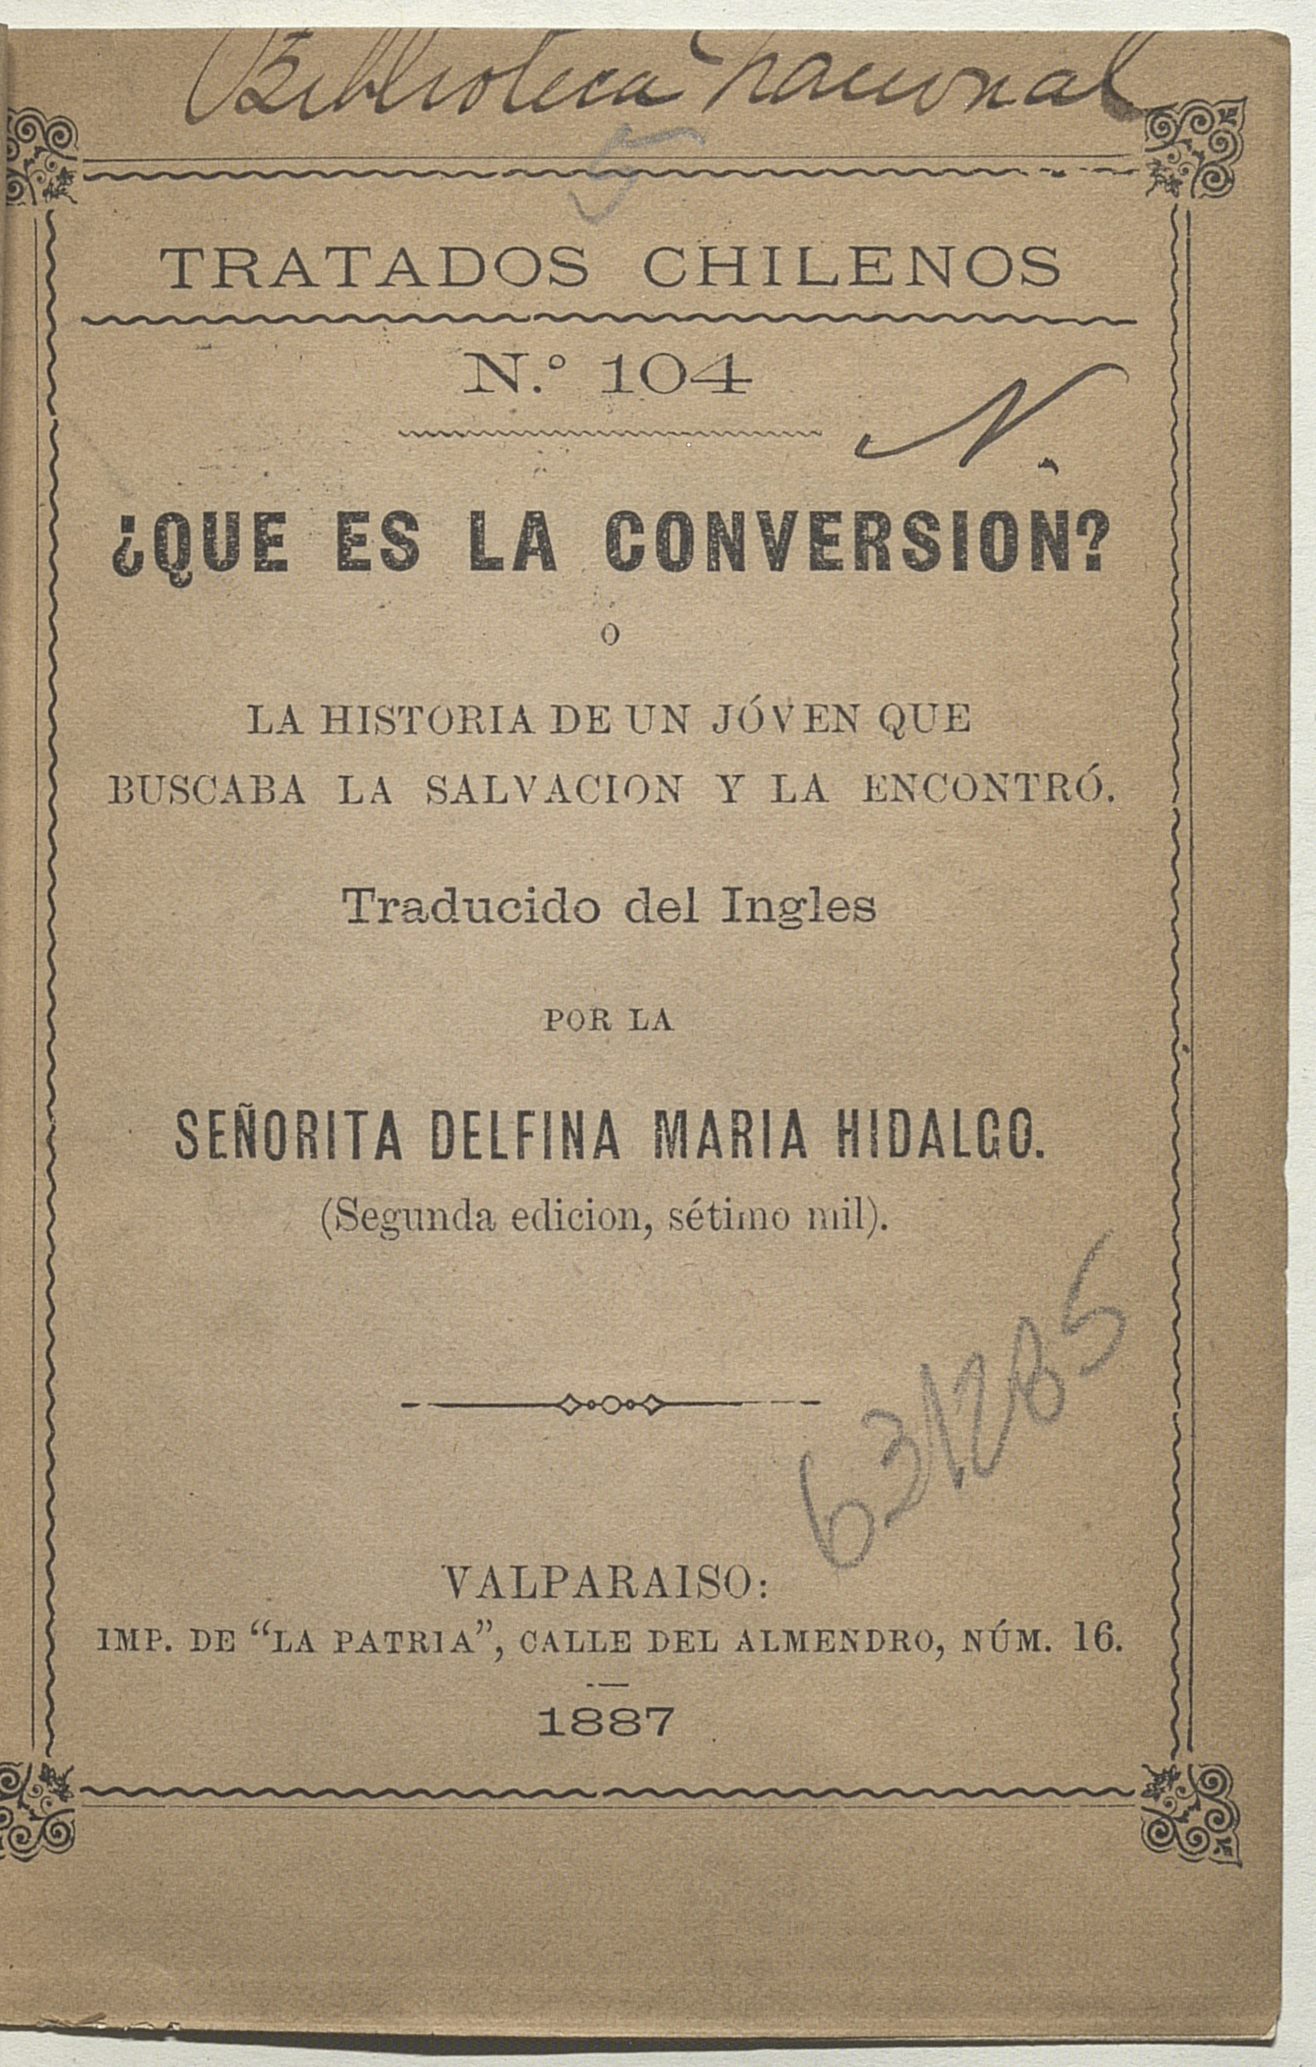 ¿Que es la conversión?: historia de un joven que buscaba la salvación y la encontró traducida del ingles por la señorita Delfina Maria Hidalgo